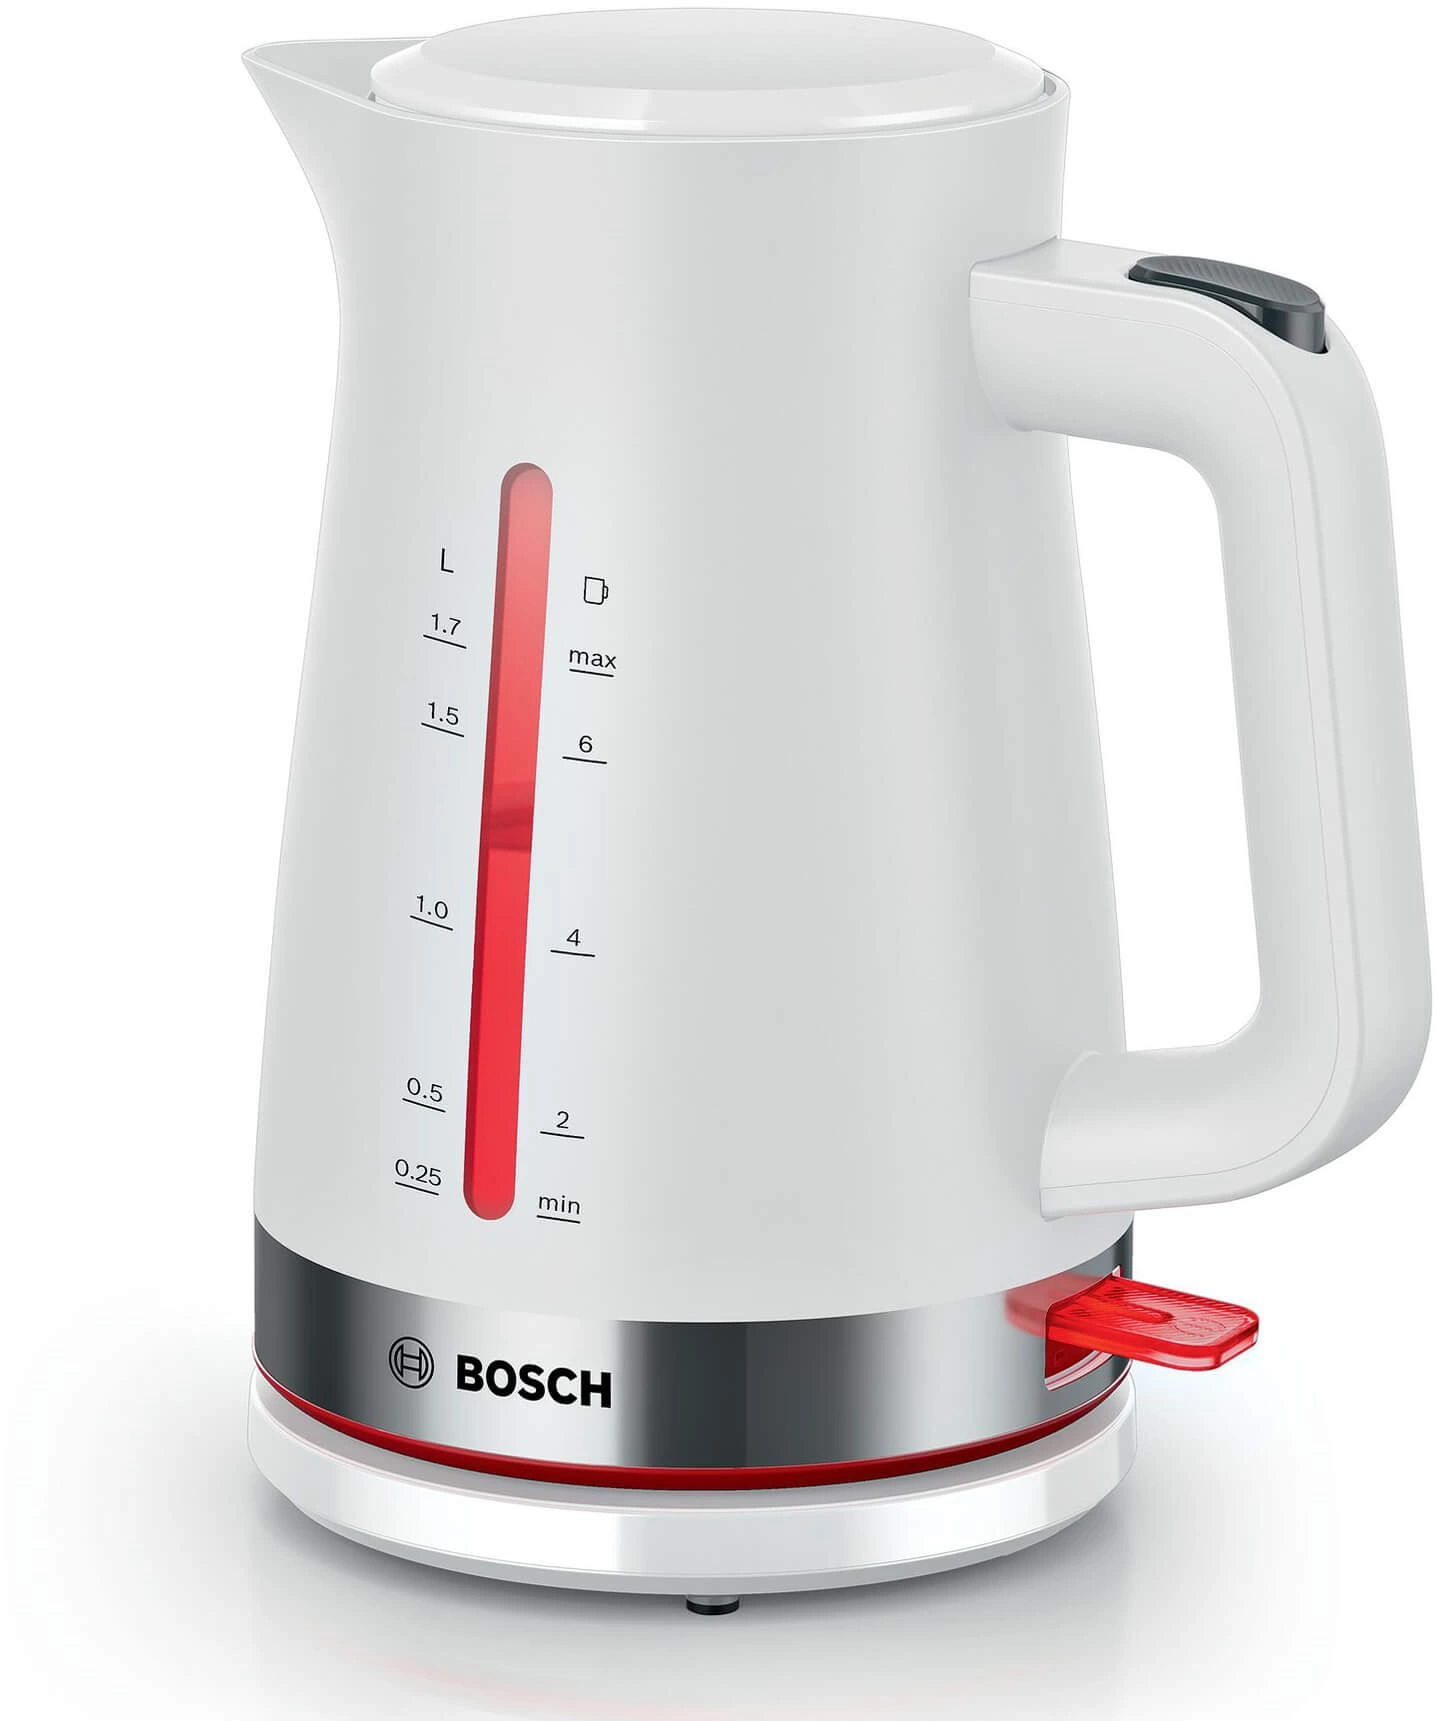   Bosch TWK4M221 1.7.  : 